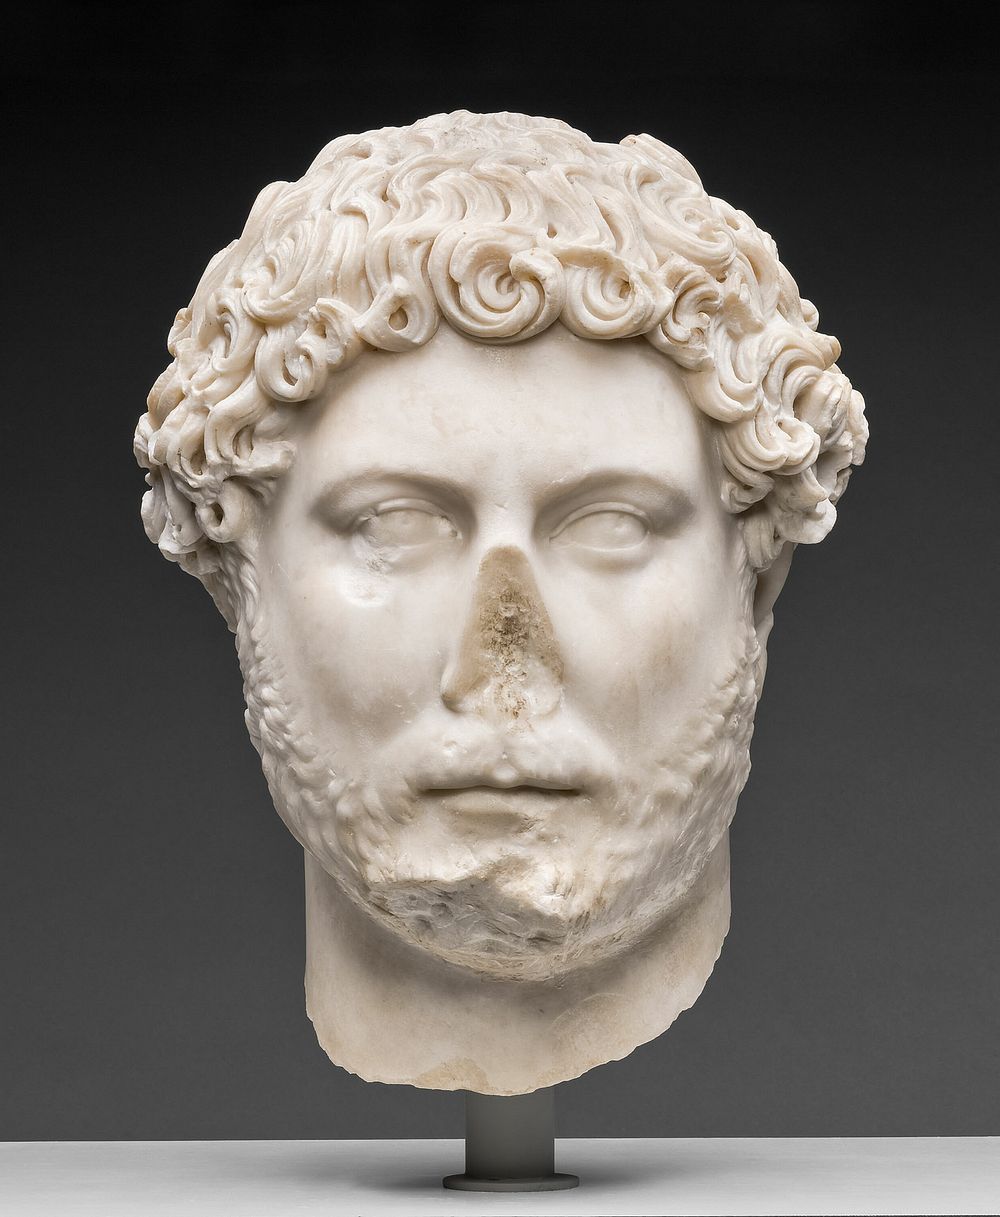 Portrait Head of Emperor Hadrian by Ancient Roman